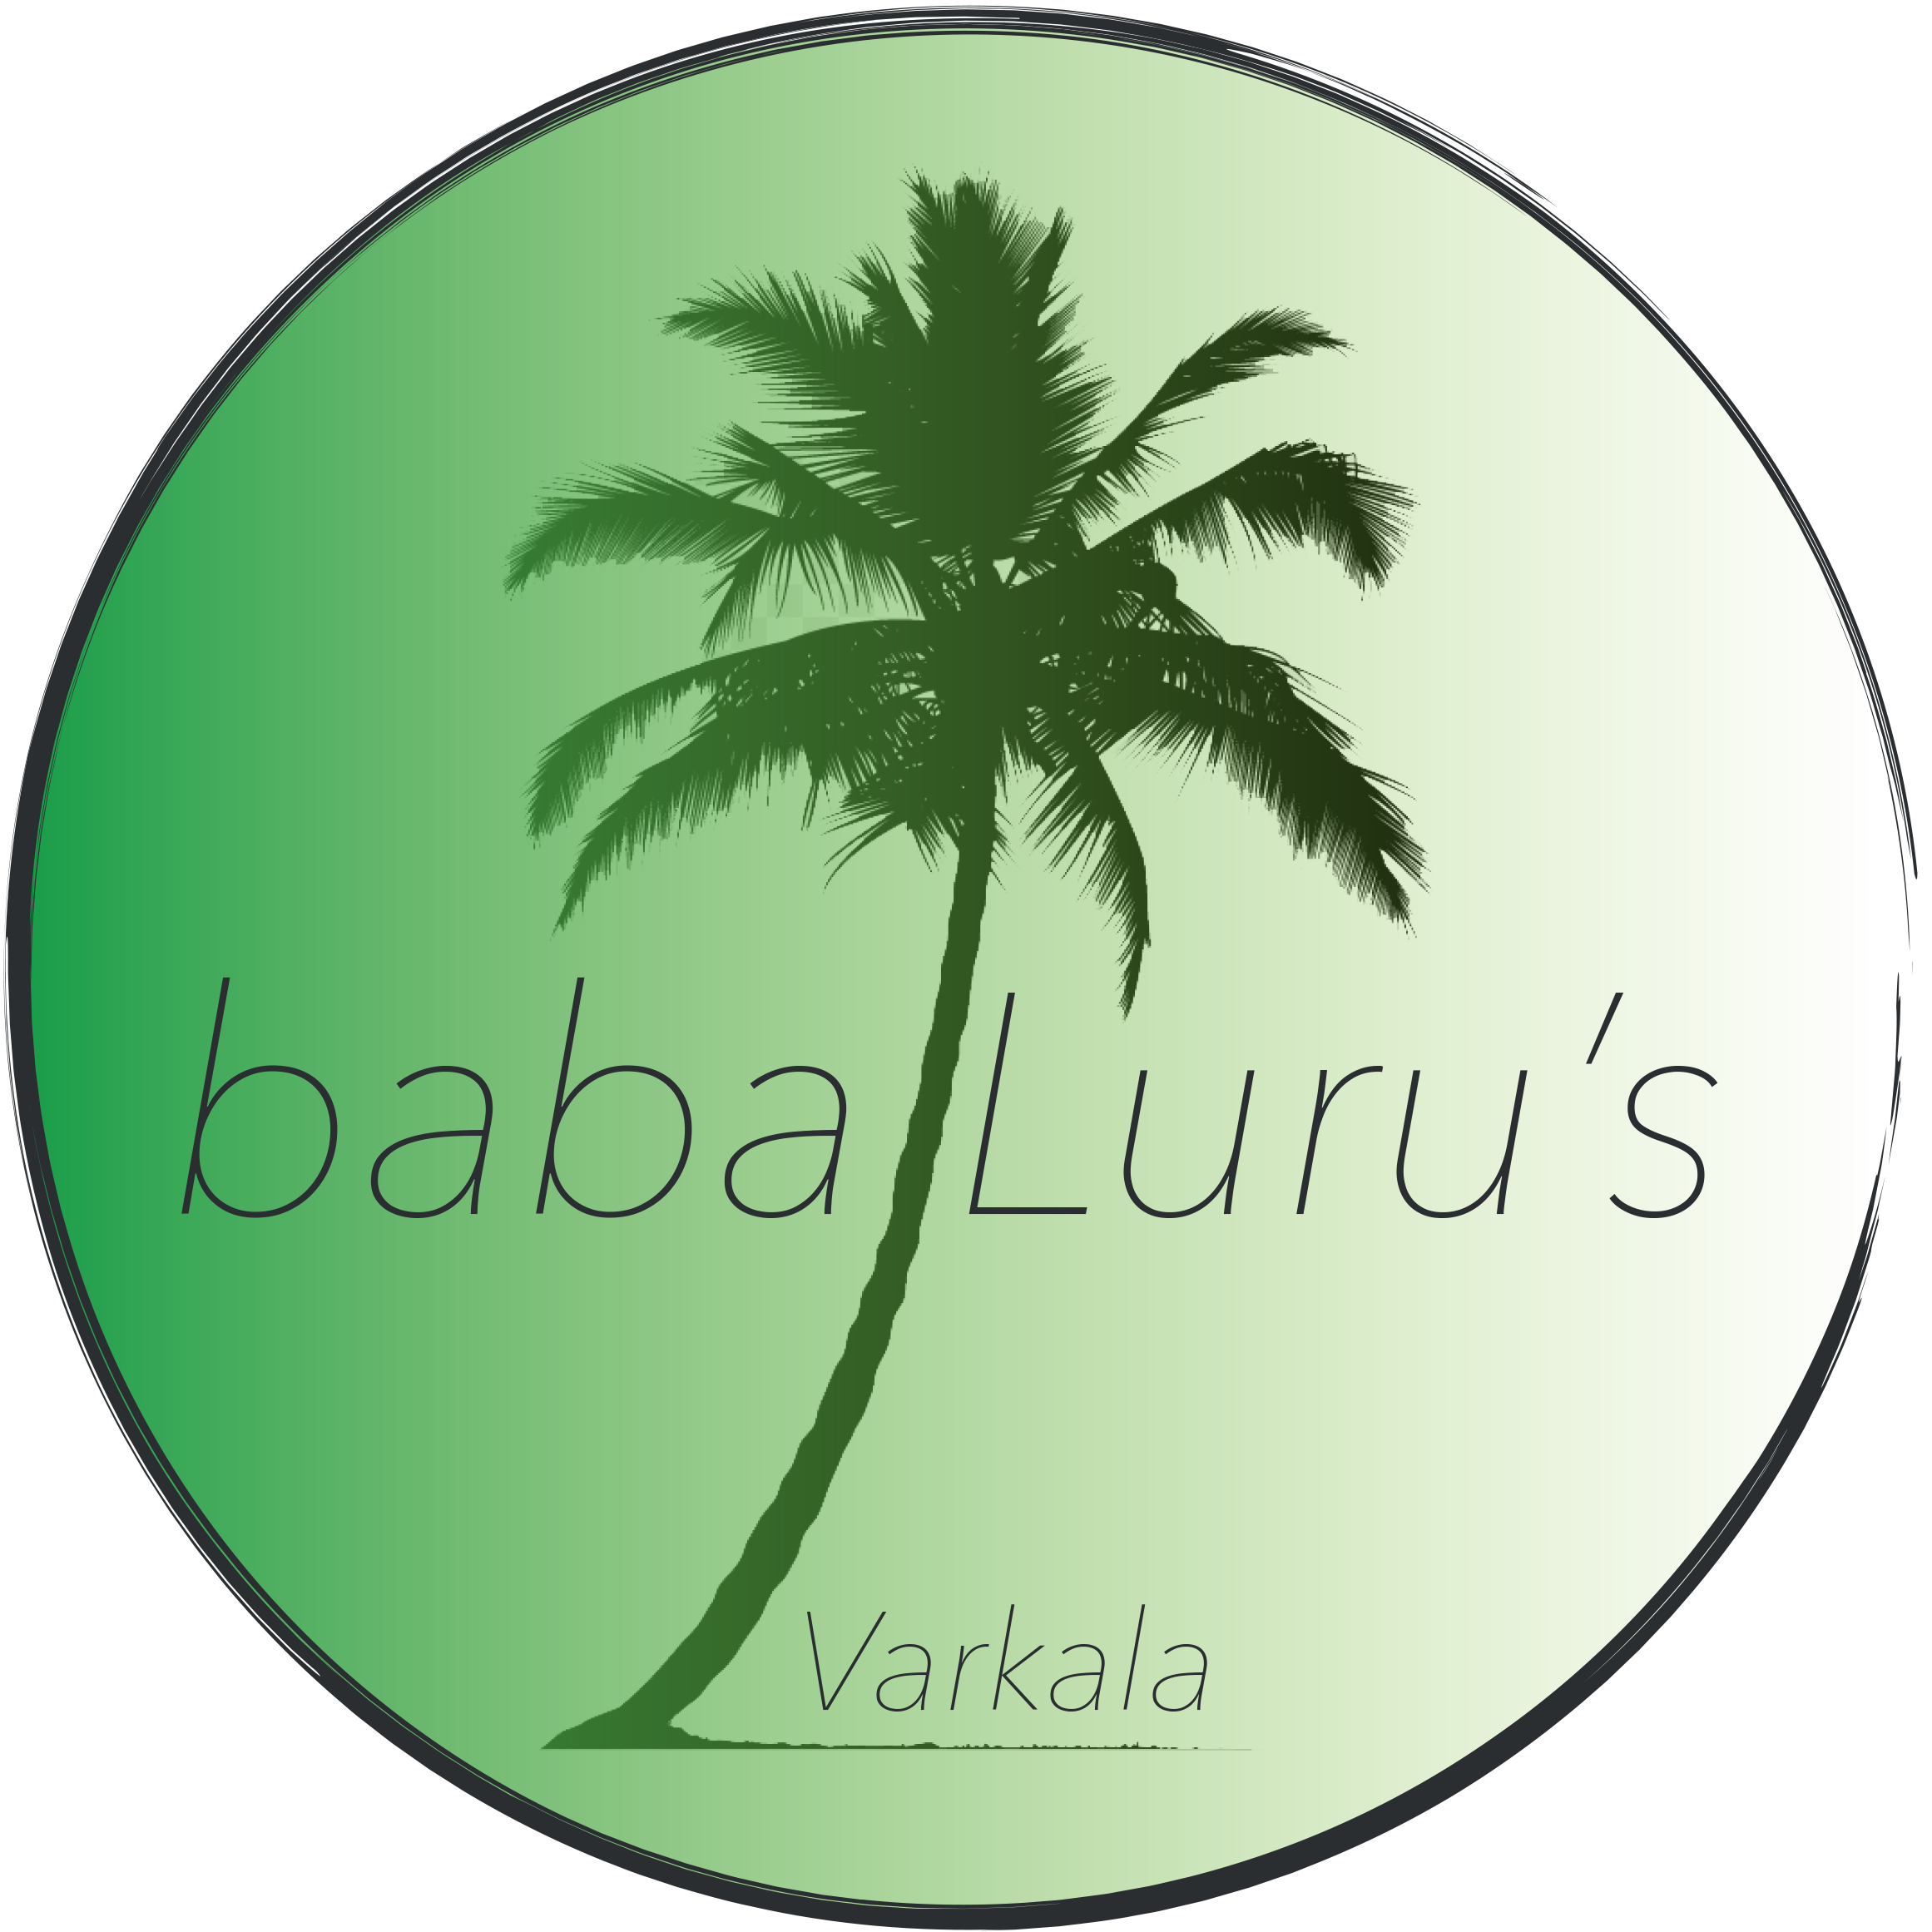 Baba Images - Free Download on Freepik